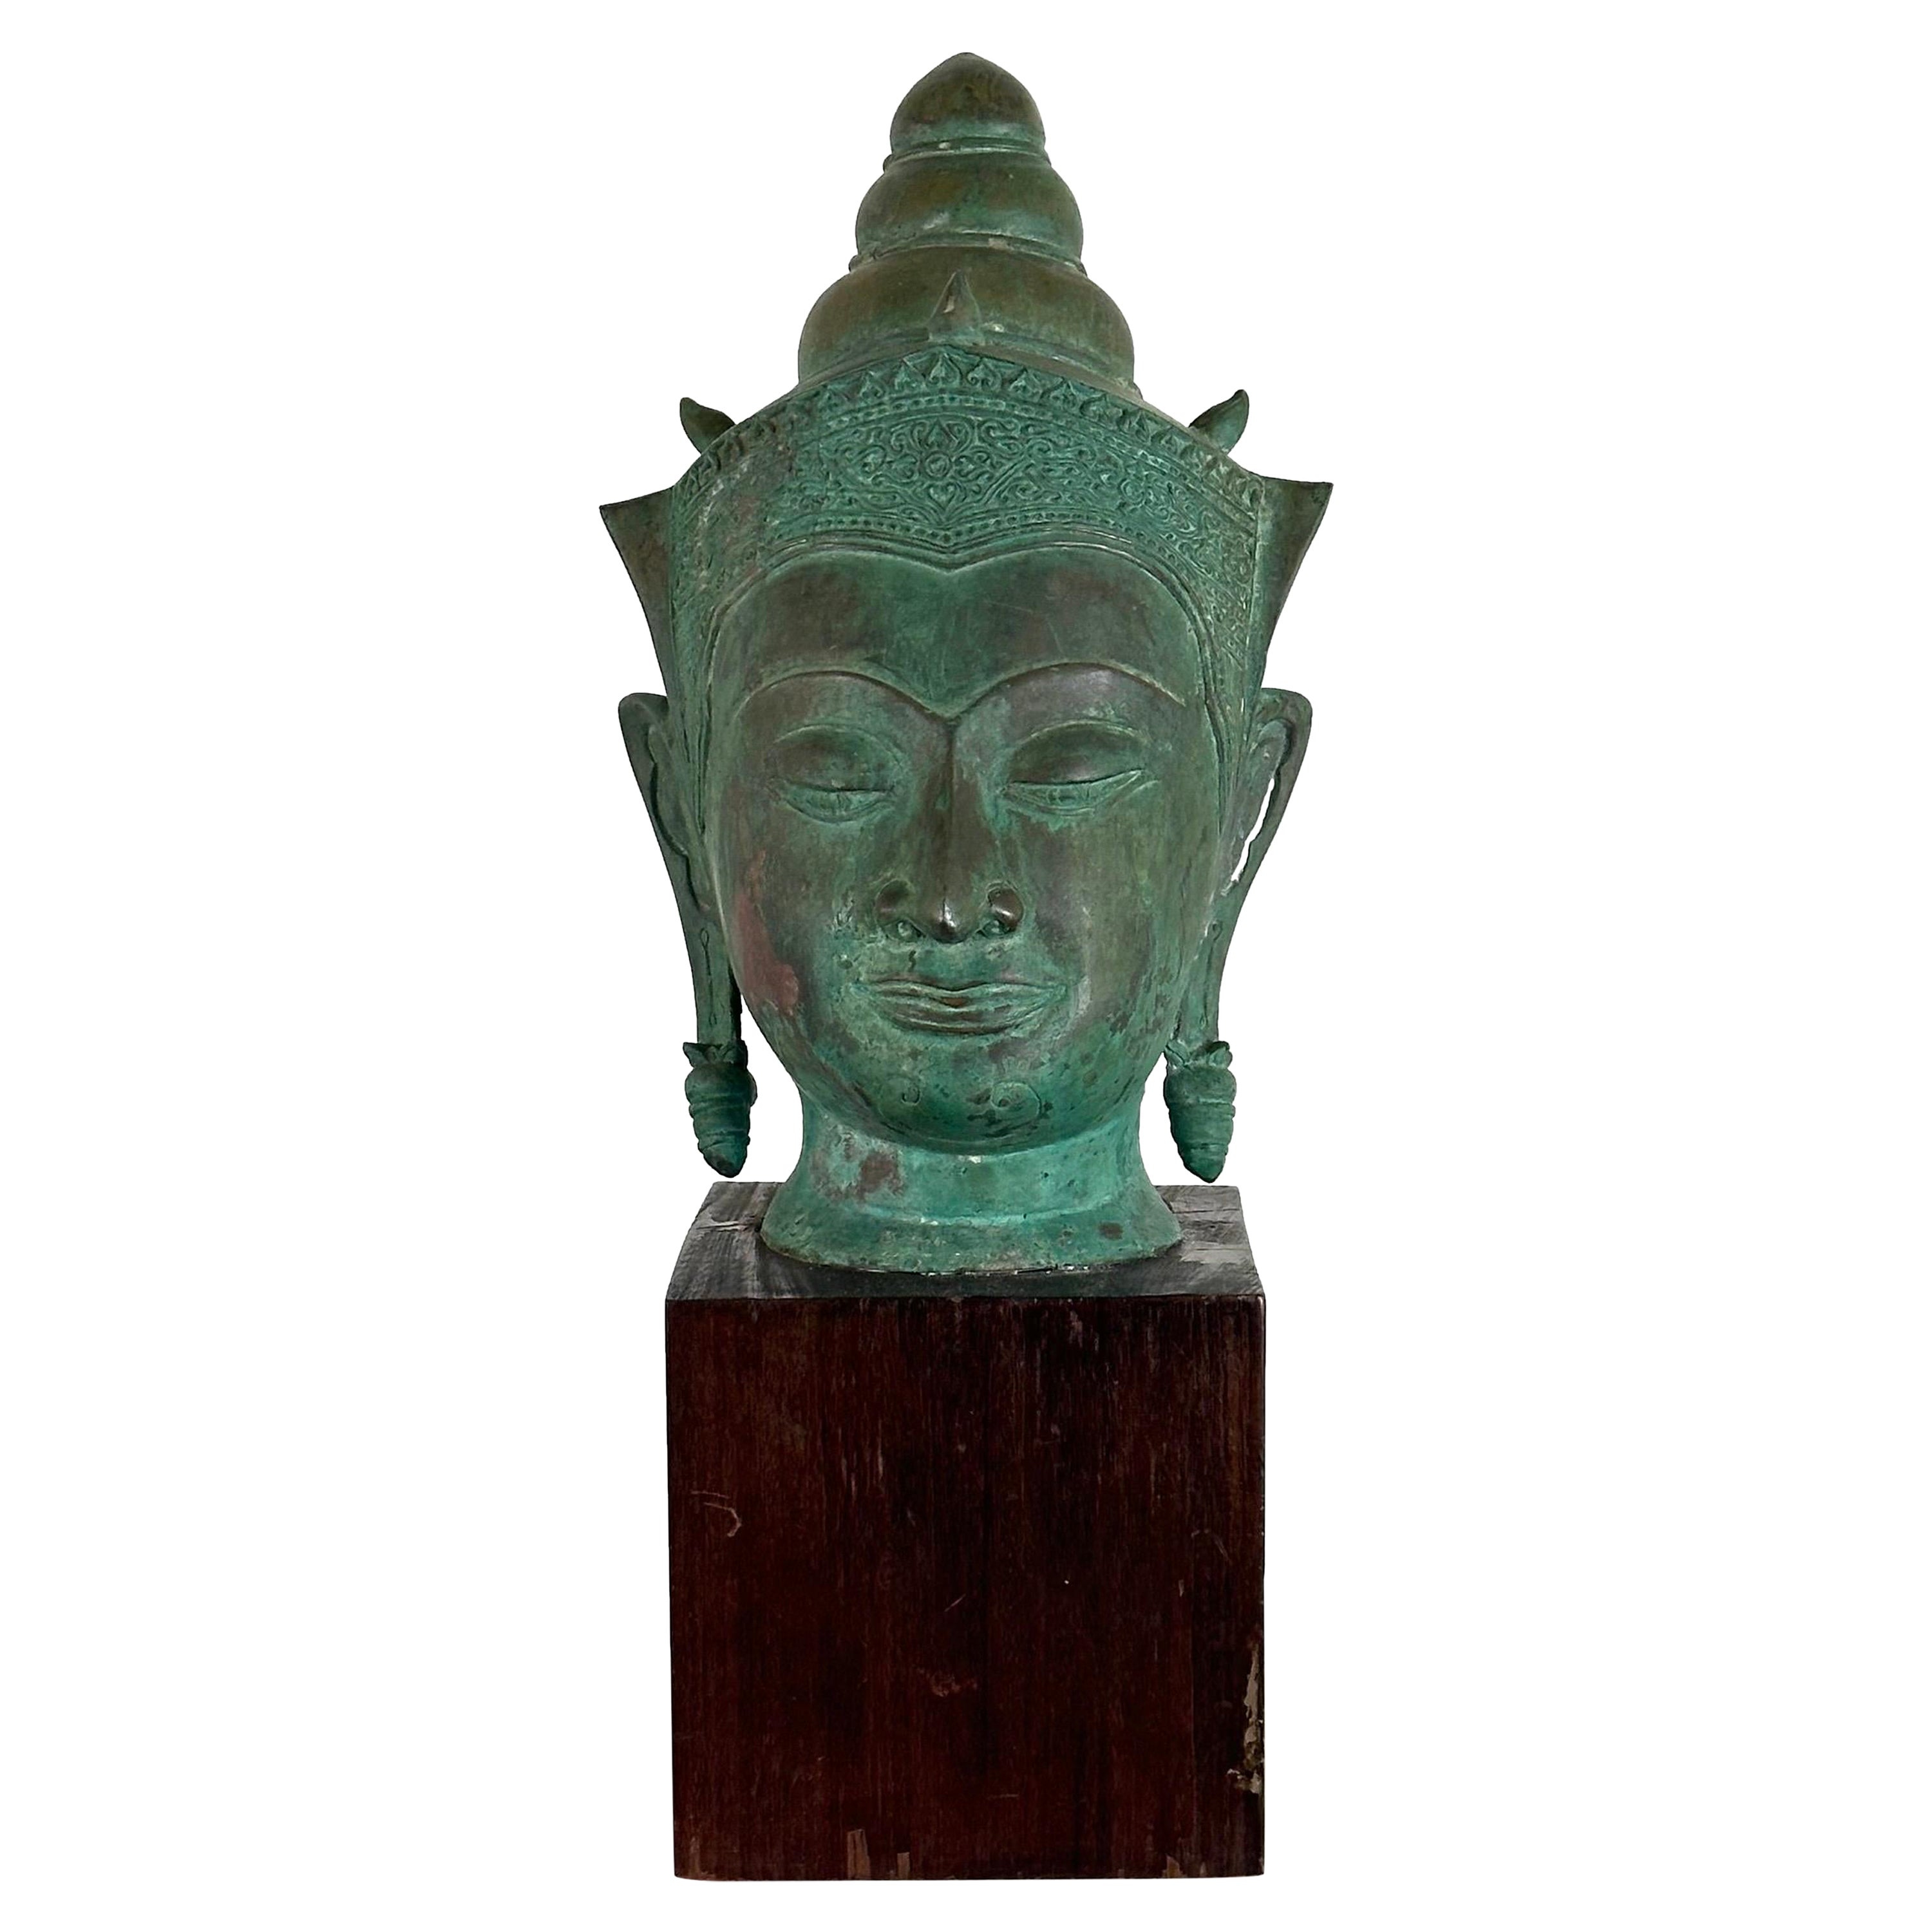 Exquisite 19th Century Thai Bronze Buddha Head on Wooden Base